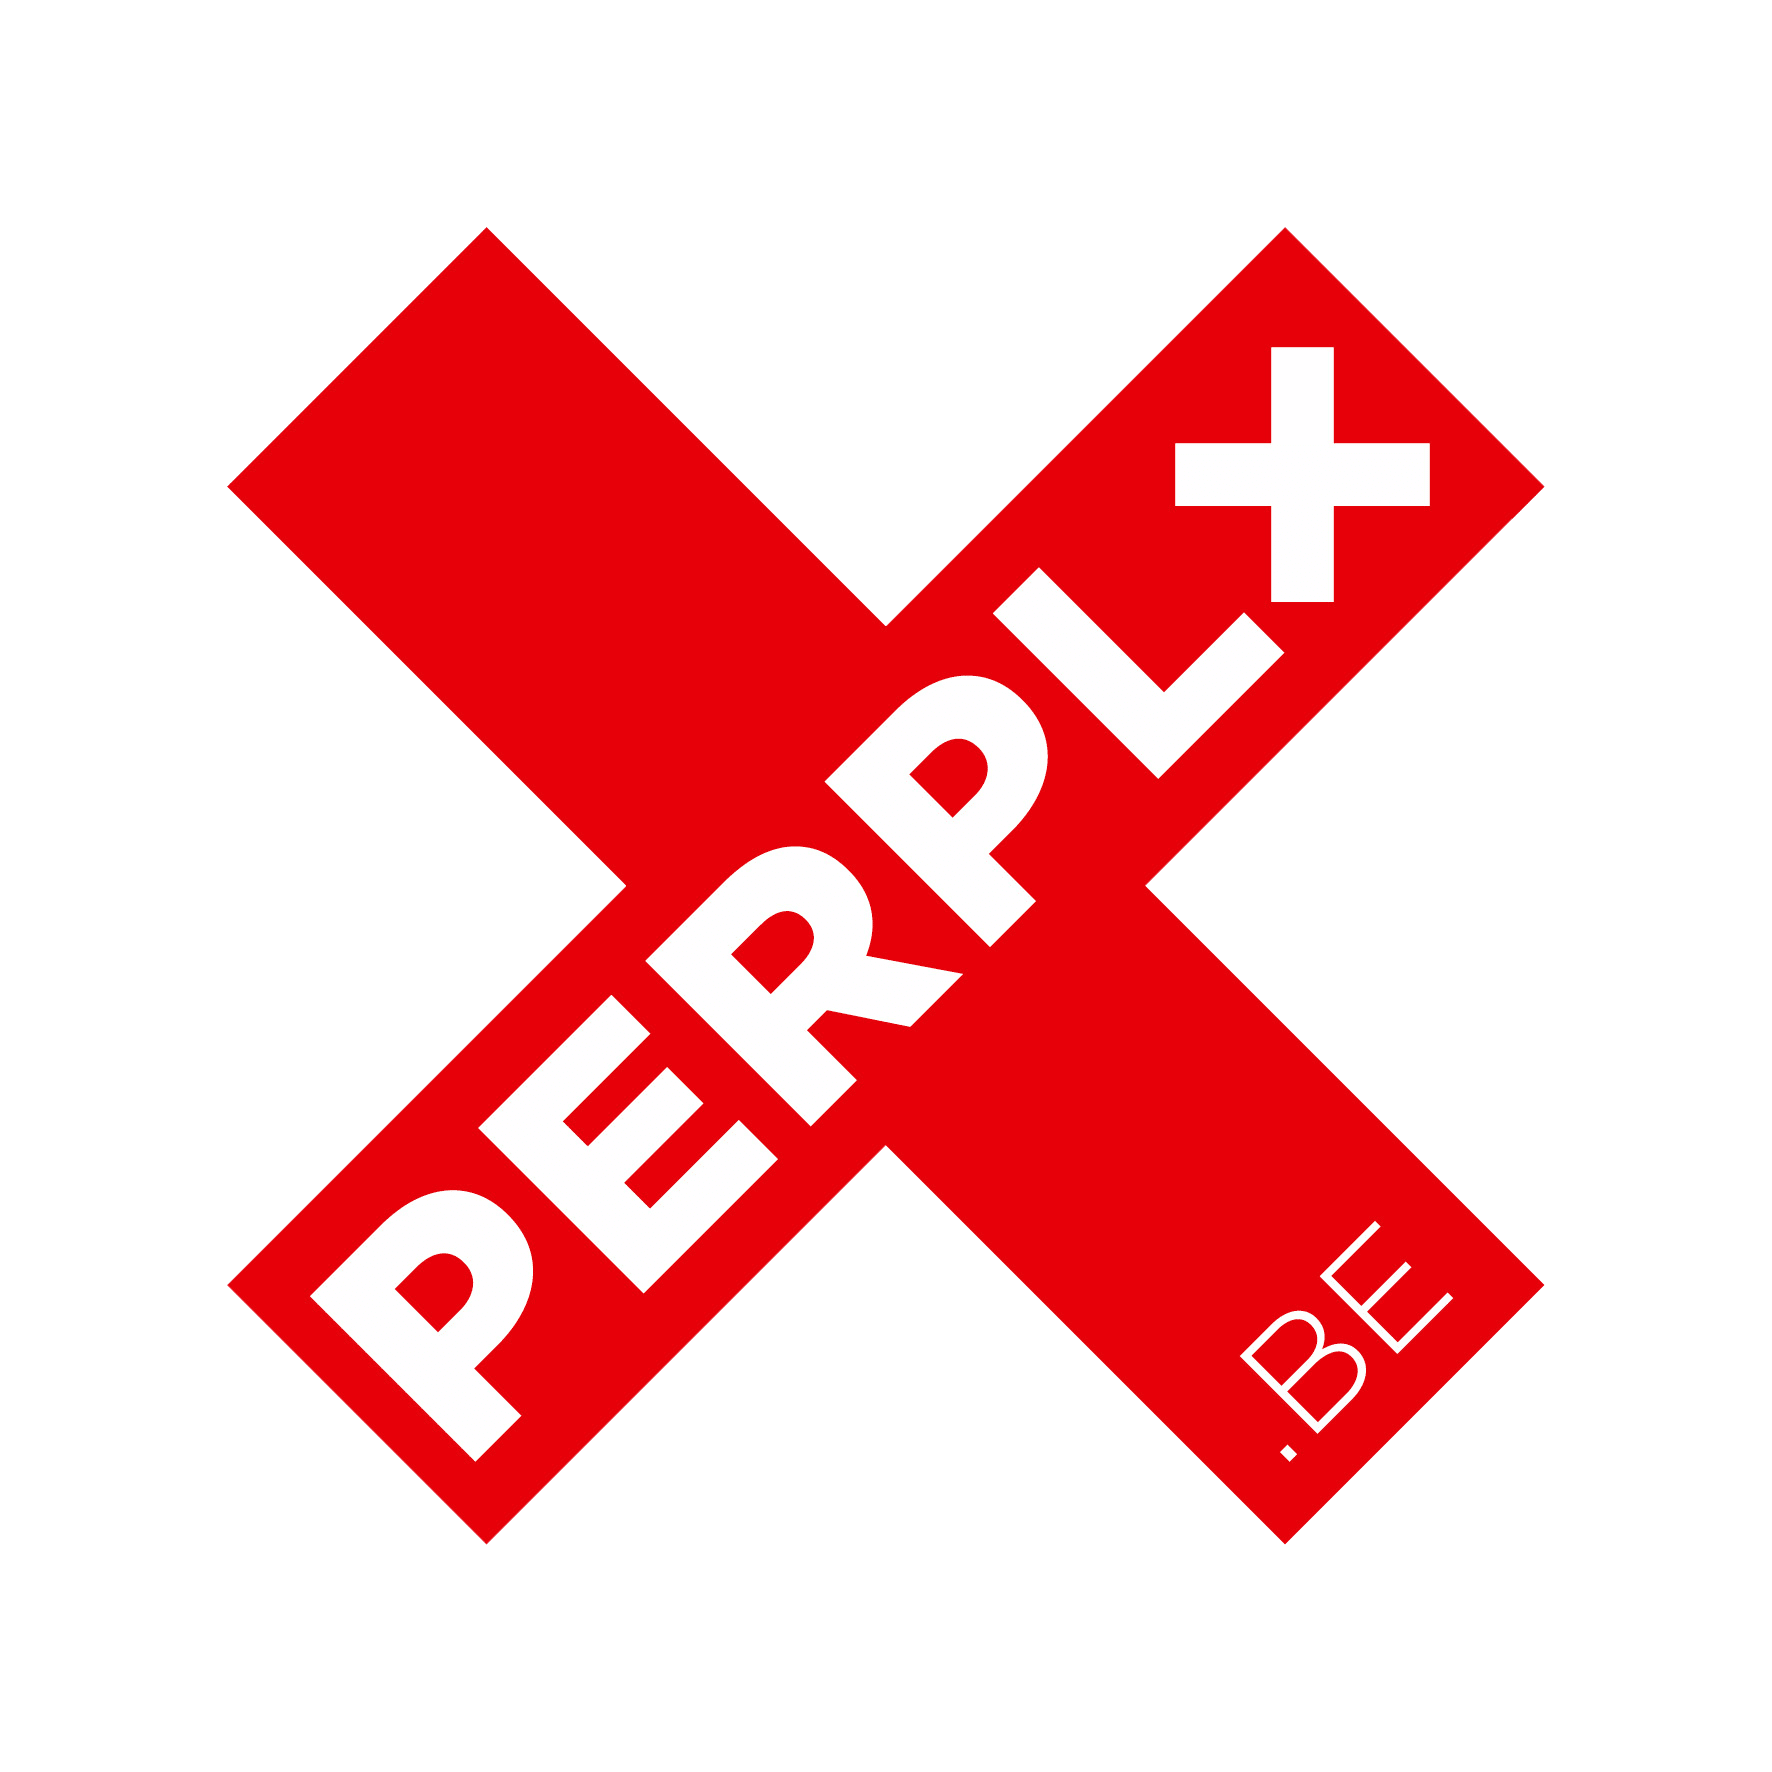 Perplx circusnext - European Circus Label